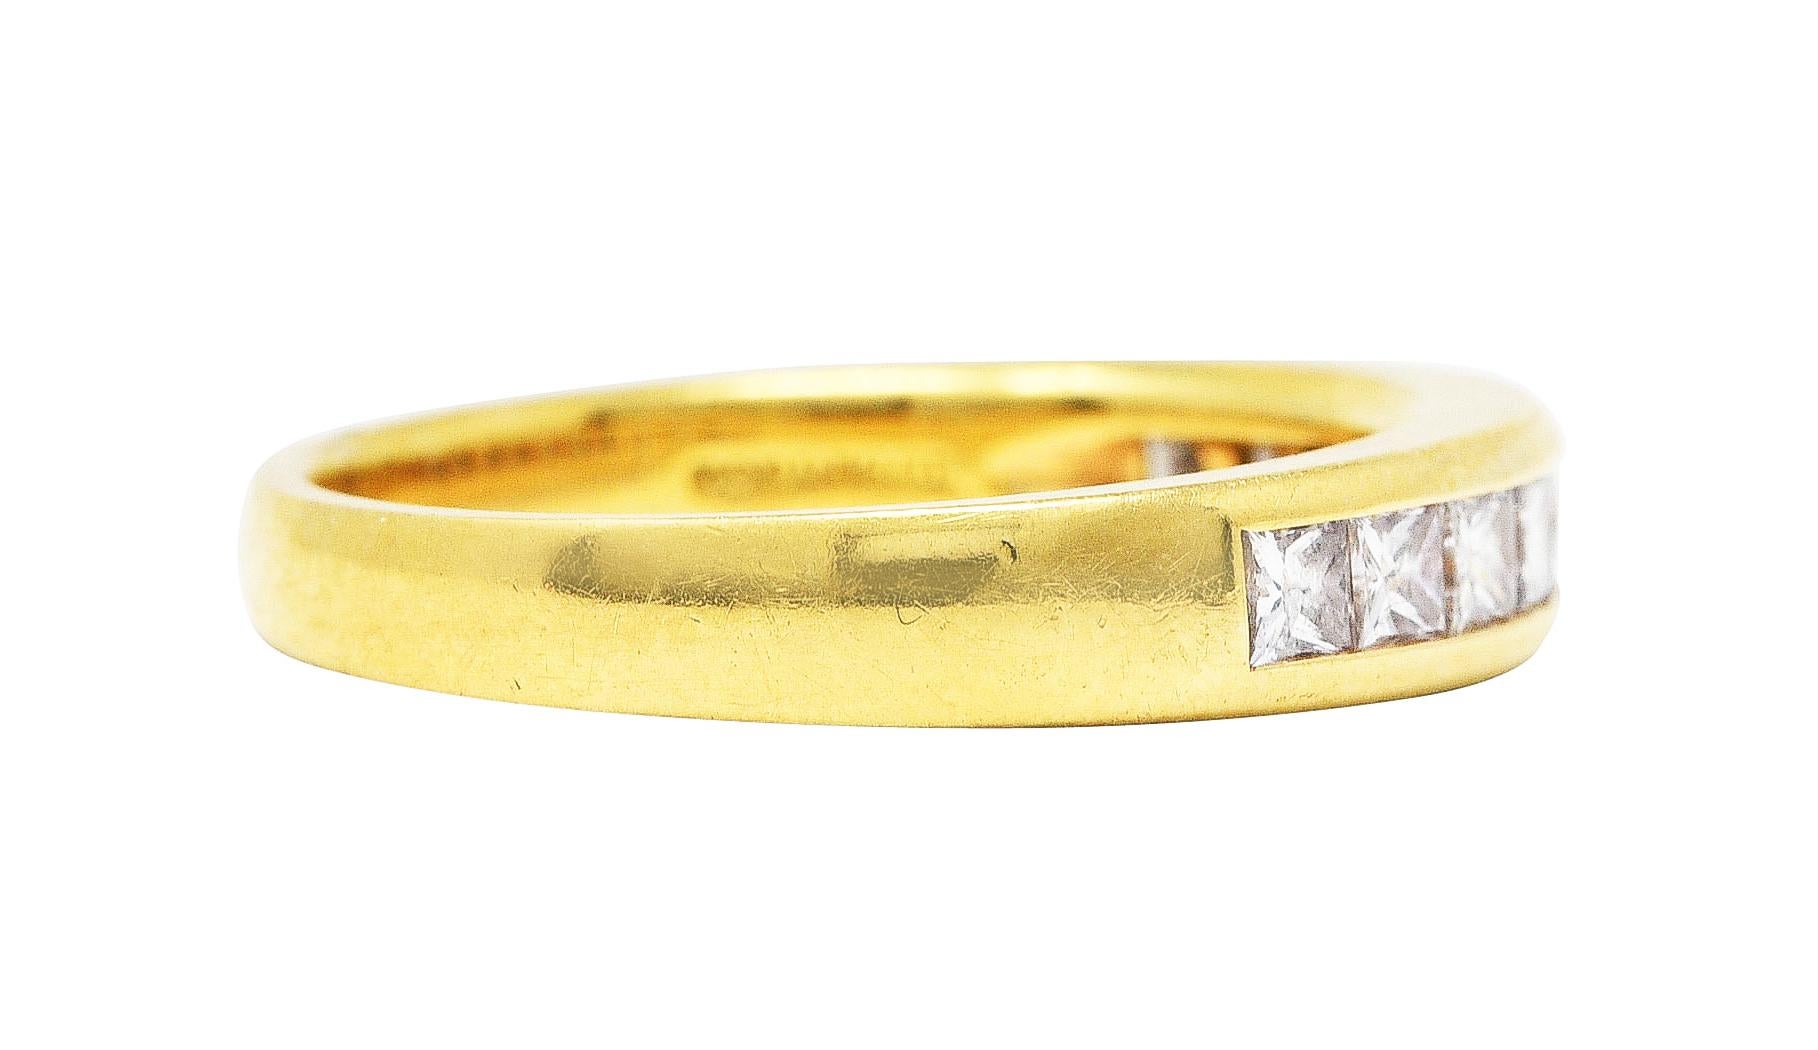 L'anneau est serti de diamants de taille princesse sur le devant.

Poids total d'environ 0,80 carat - couleur G/H avec clarté VS

Estampillé 750 pour l'or 18 carats

Entièrement signé Tiffany & Co. Japon

Taille de l'anneau : 7 1/2 et de grande